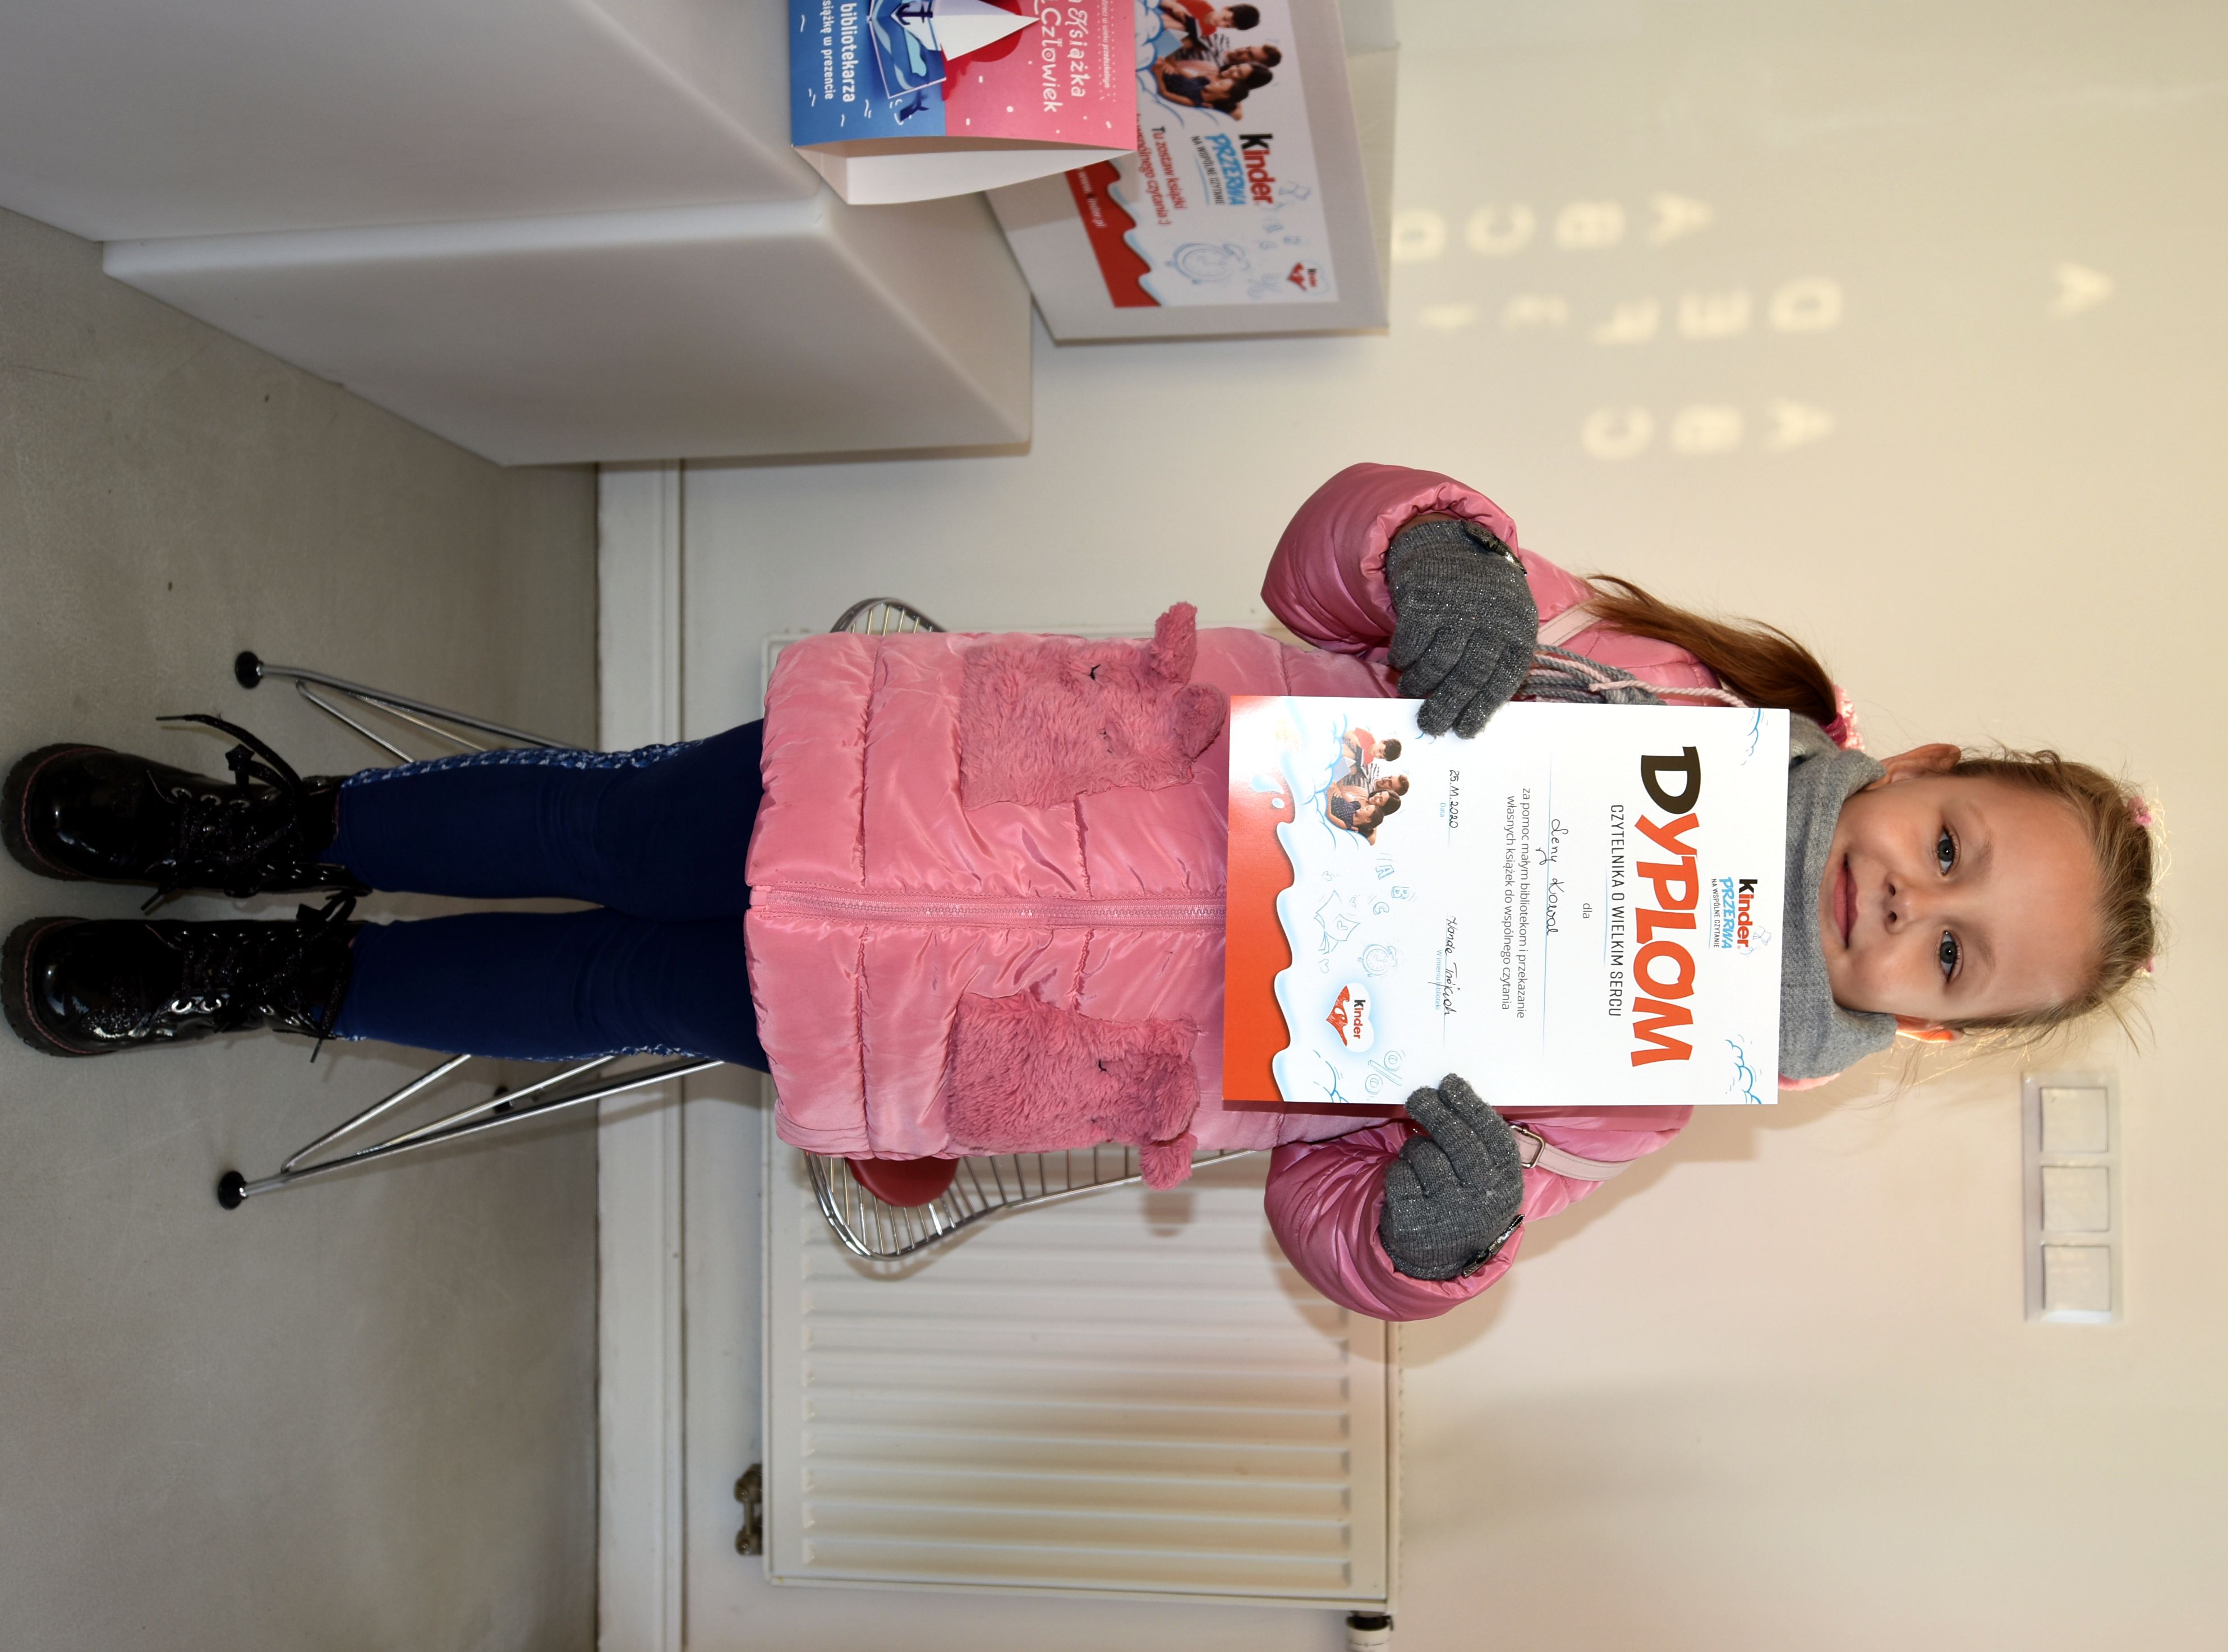 Lena z dyplomem Czytelnika o Wielkim Sercu, który dostała  za przekazanie książek w ramach akcji Kinder "Podziel się książką" 